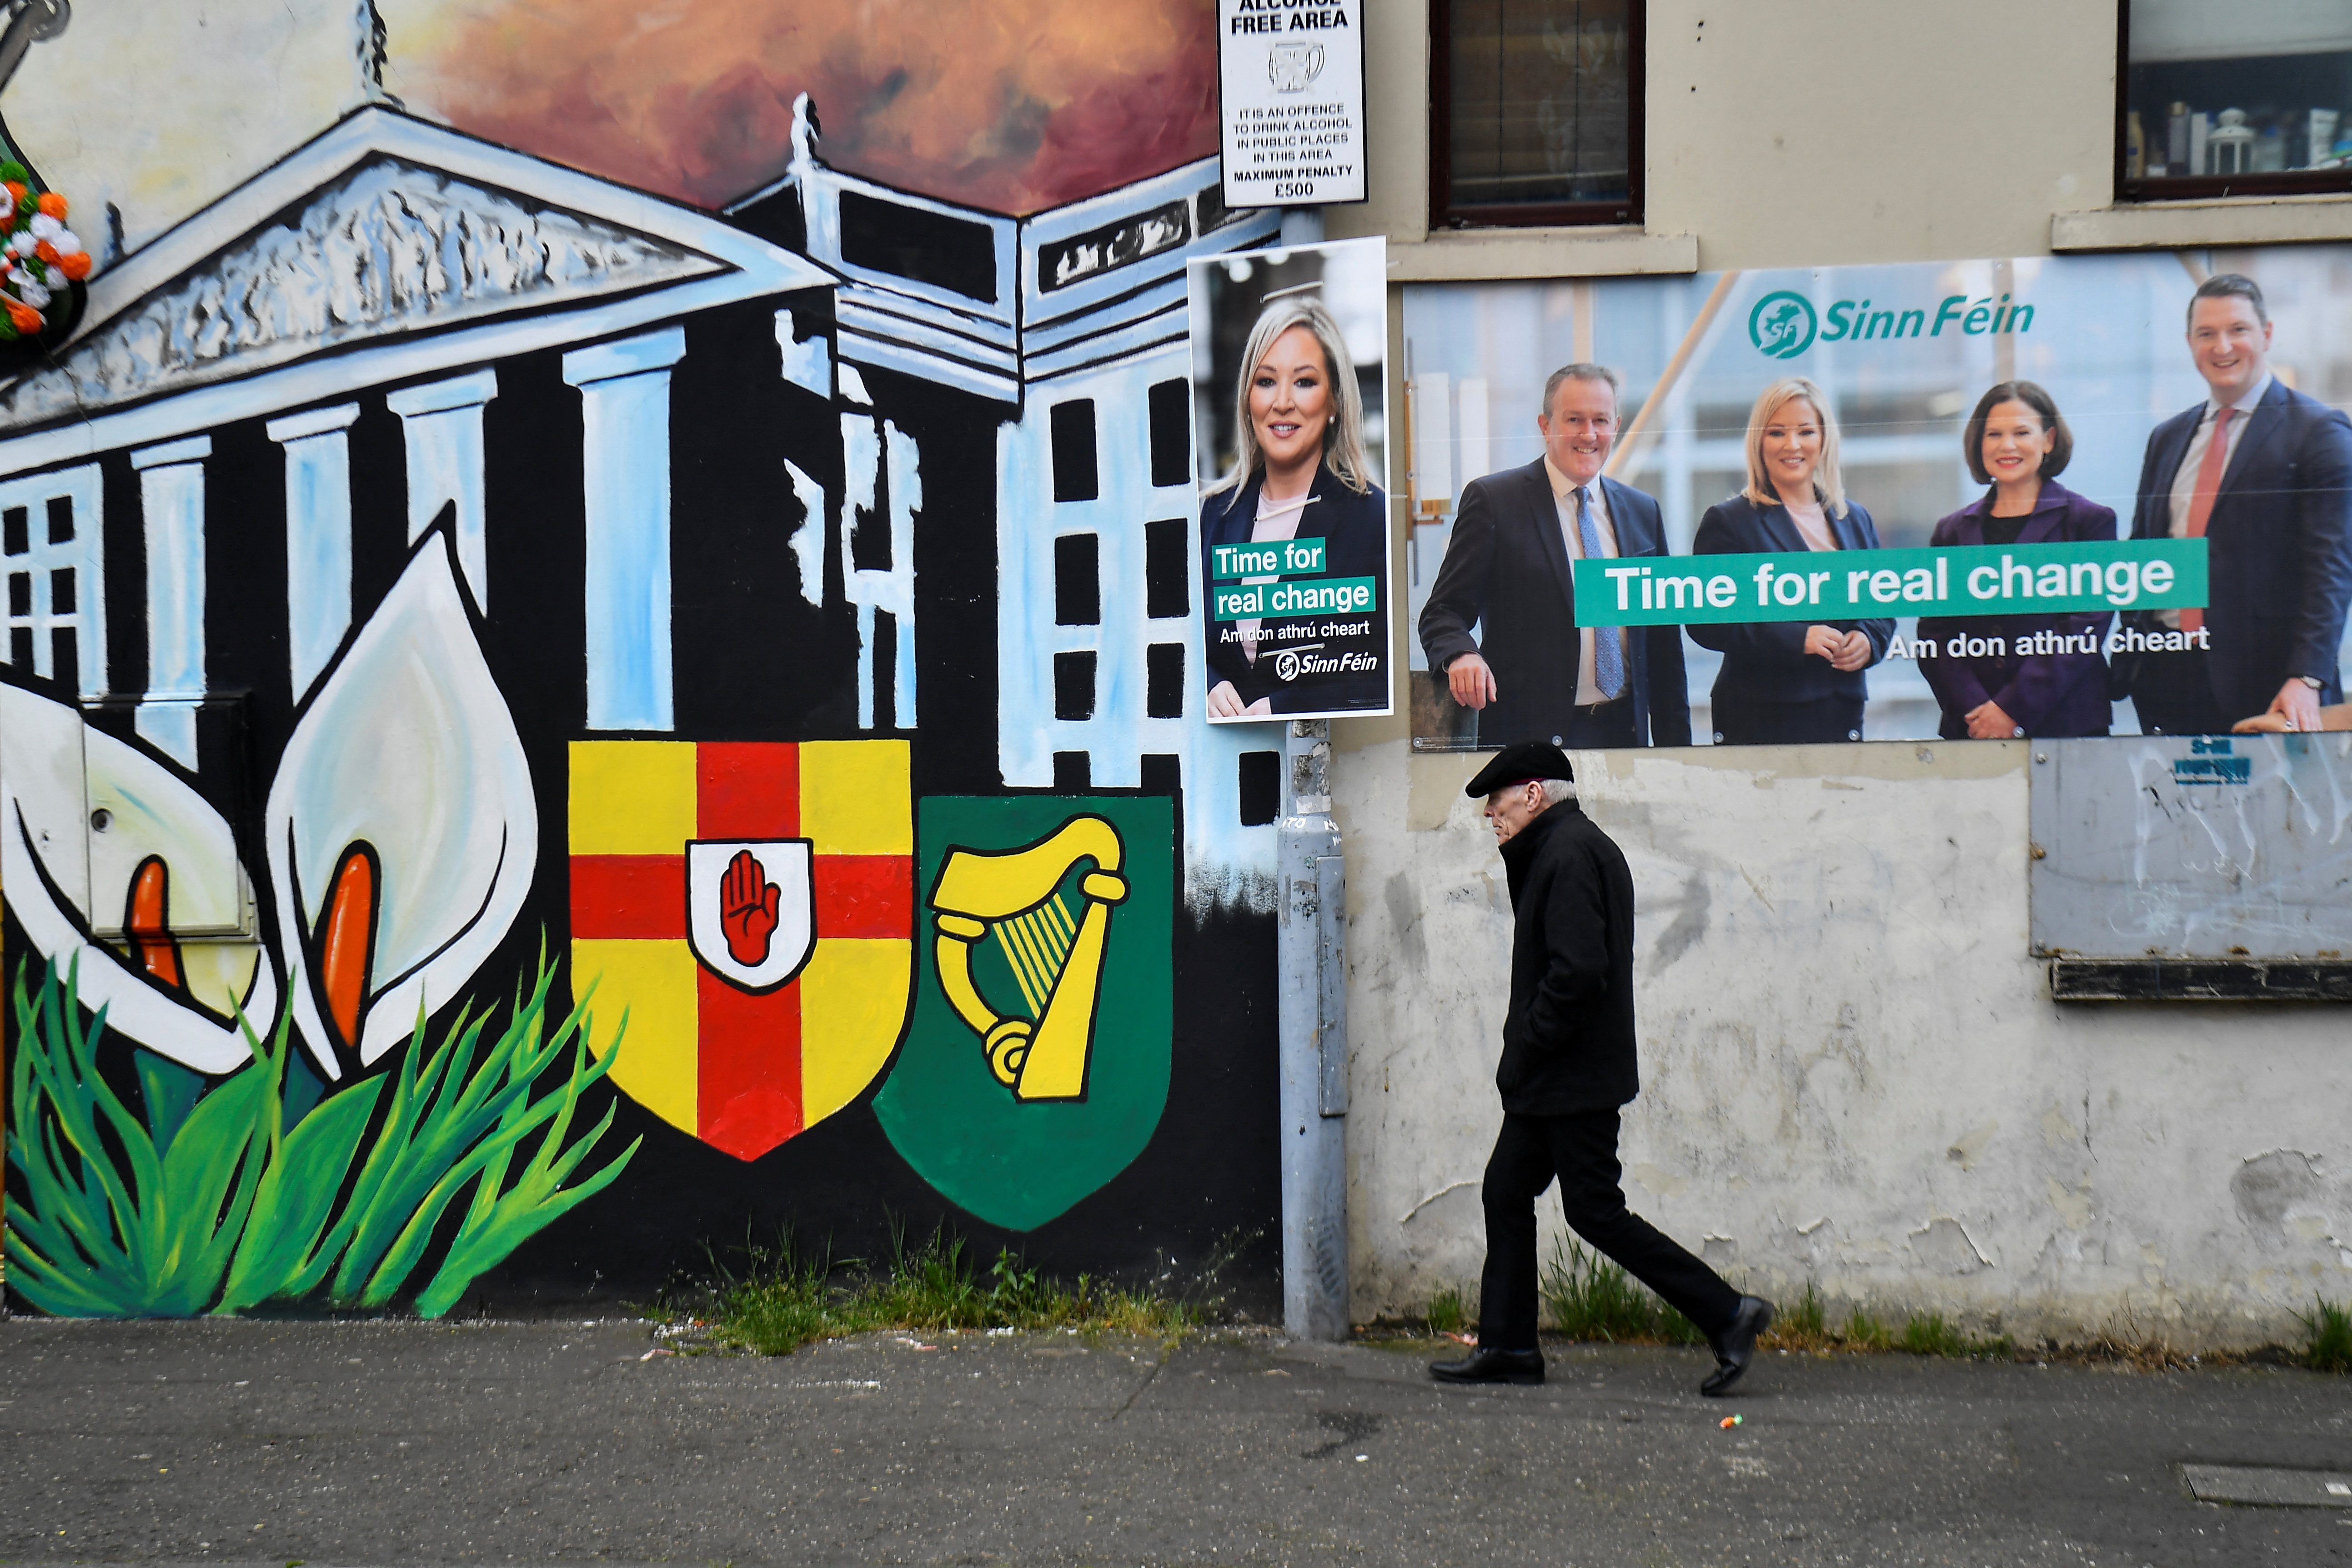 Sinn Fein party posters, in Belfast